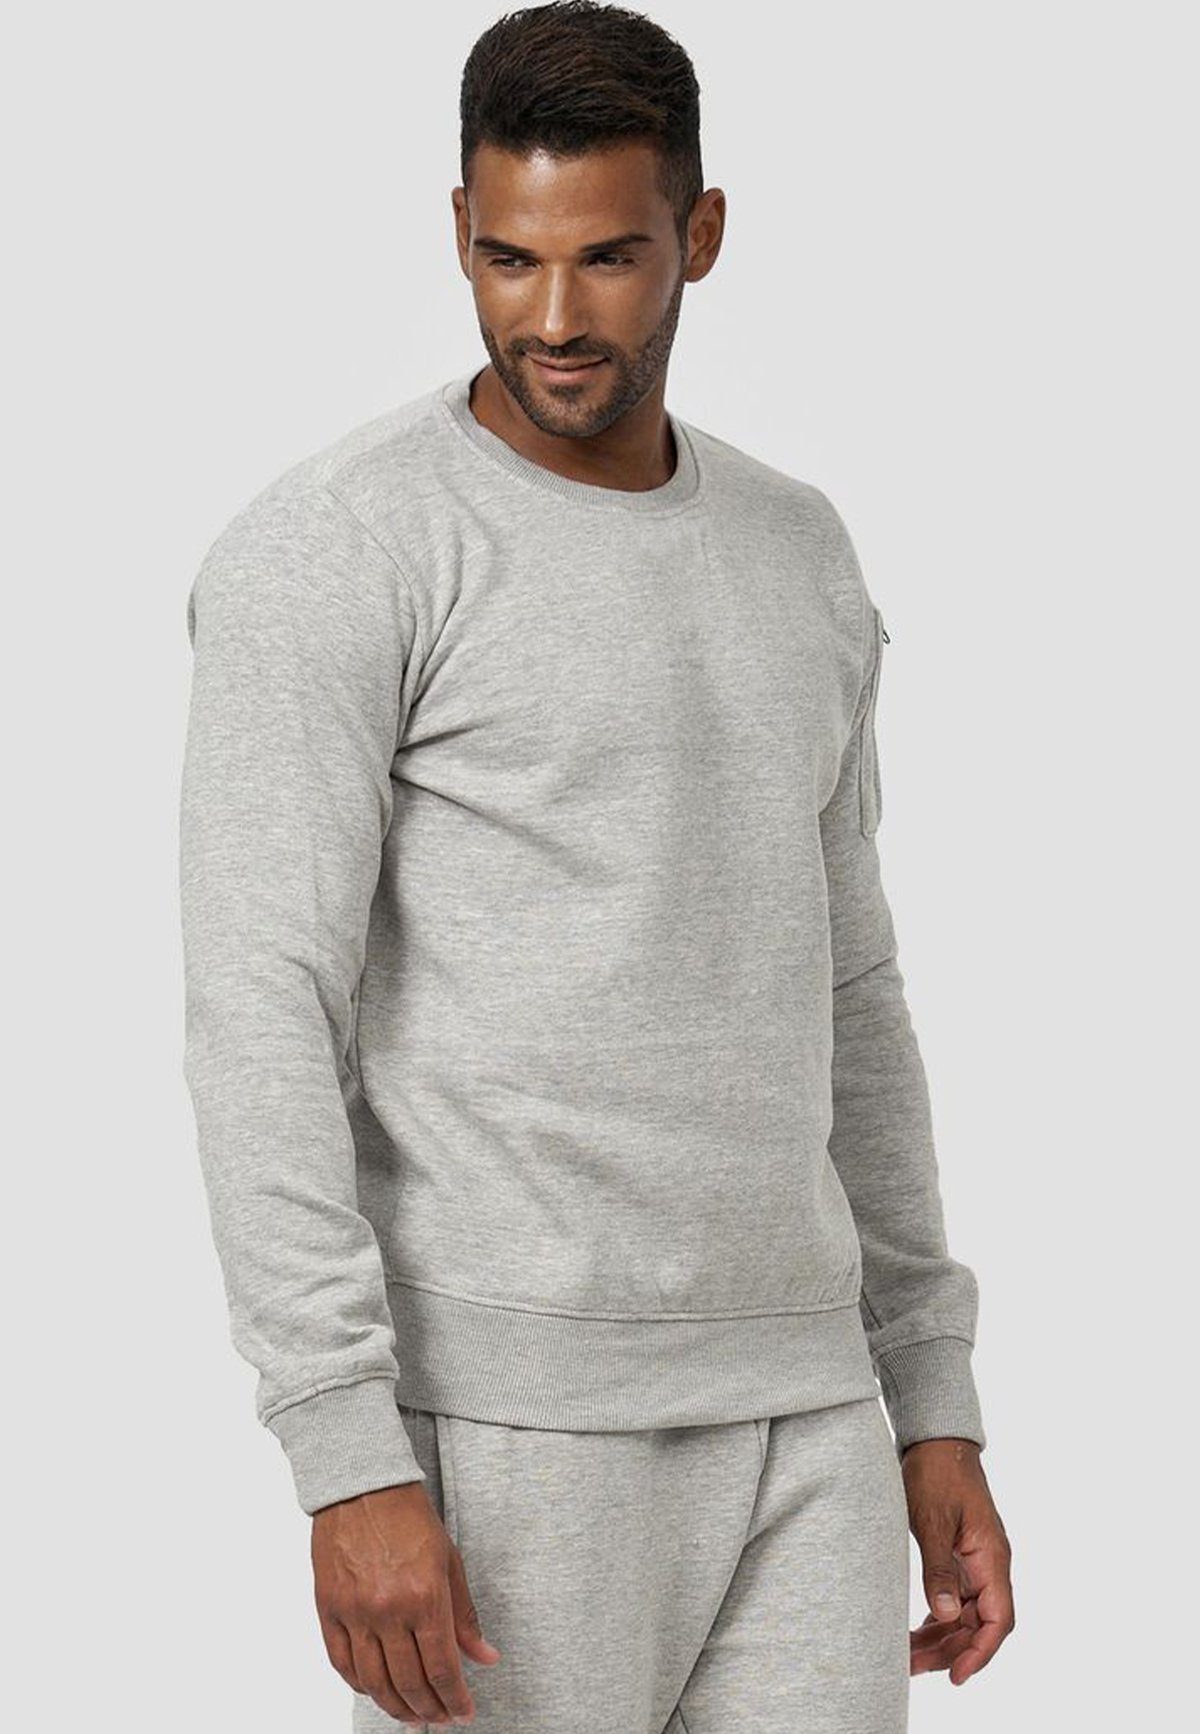 Sweatshirt ohne Pullover Kapuze Grau mit Sweatshirt 4240 Armtasche in Egomaxx